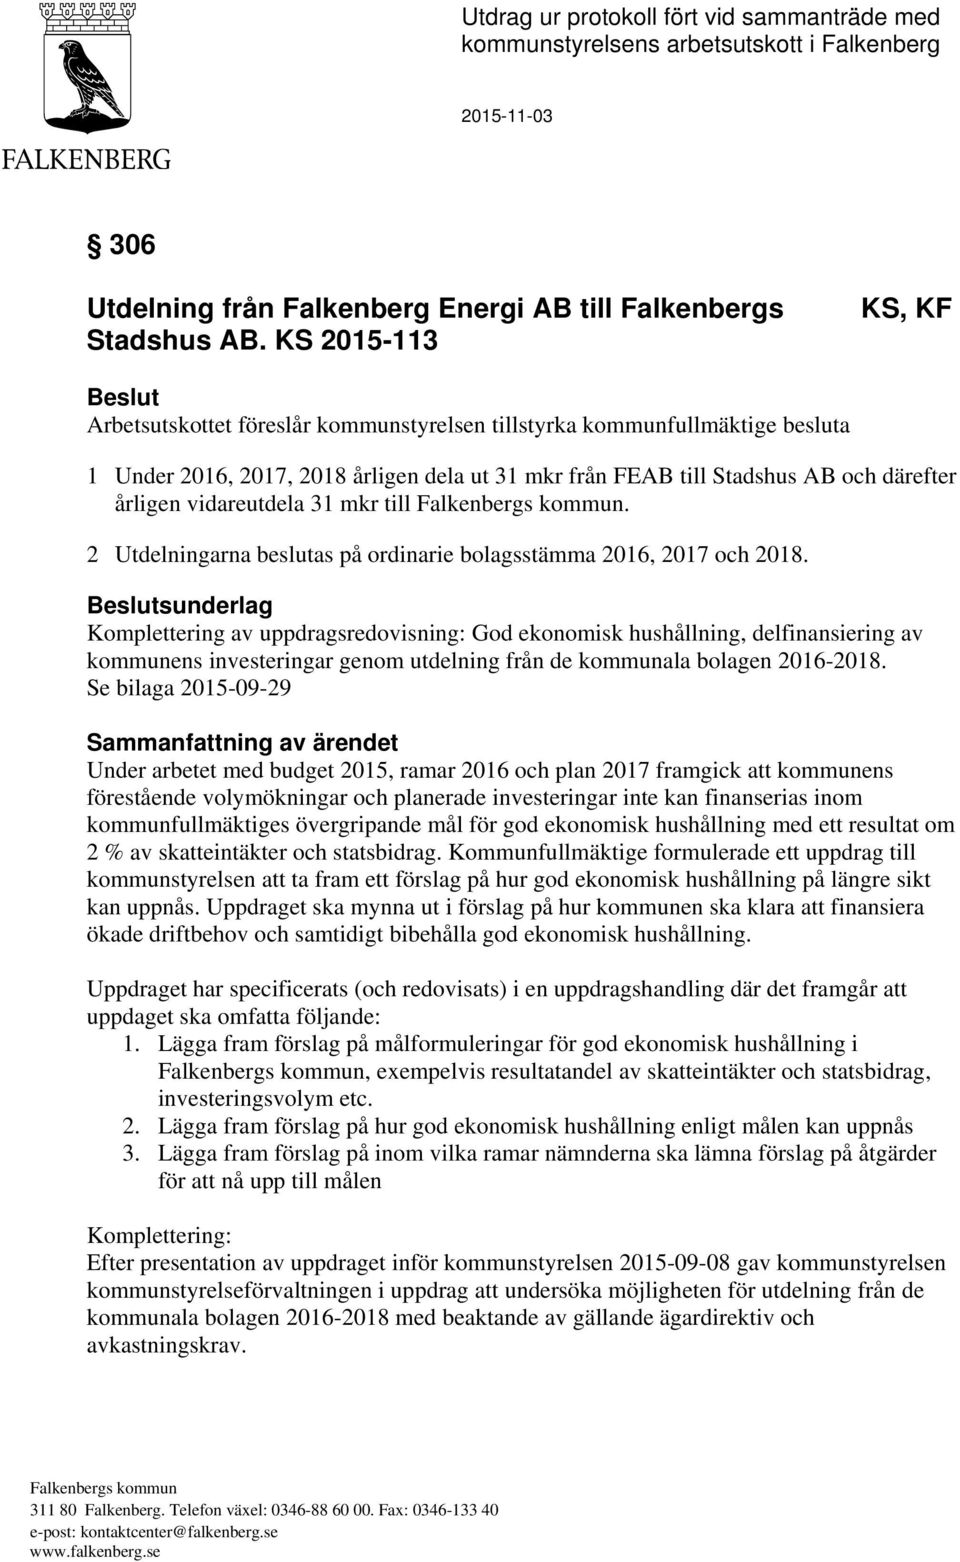 vidareutdela 31 mkr till Falkenbergs kommun. 2 Utdelningarna beslutas på ordinarie bolagsstämma 2016, 2017 och 2018.